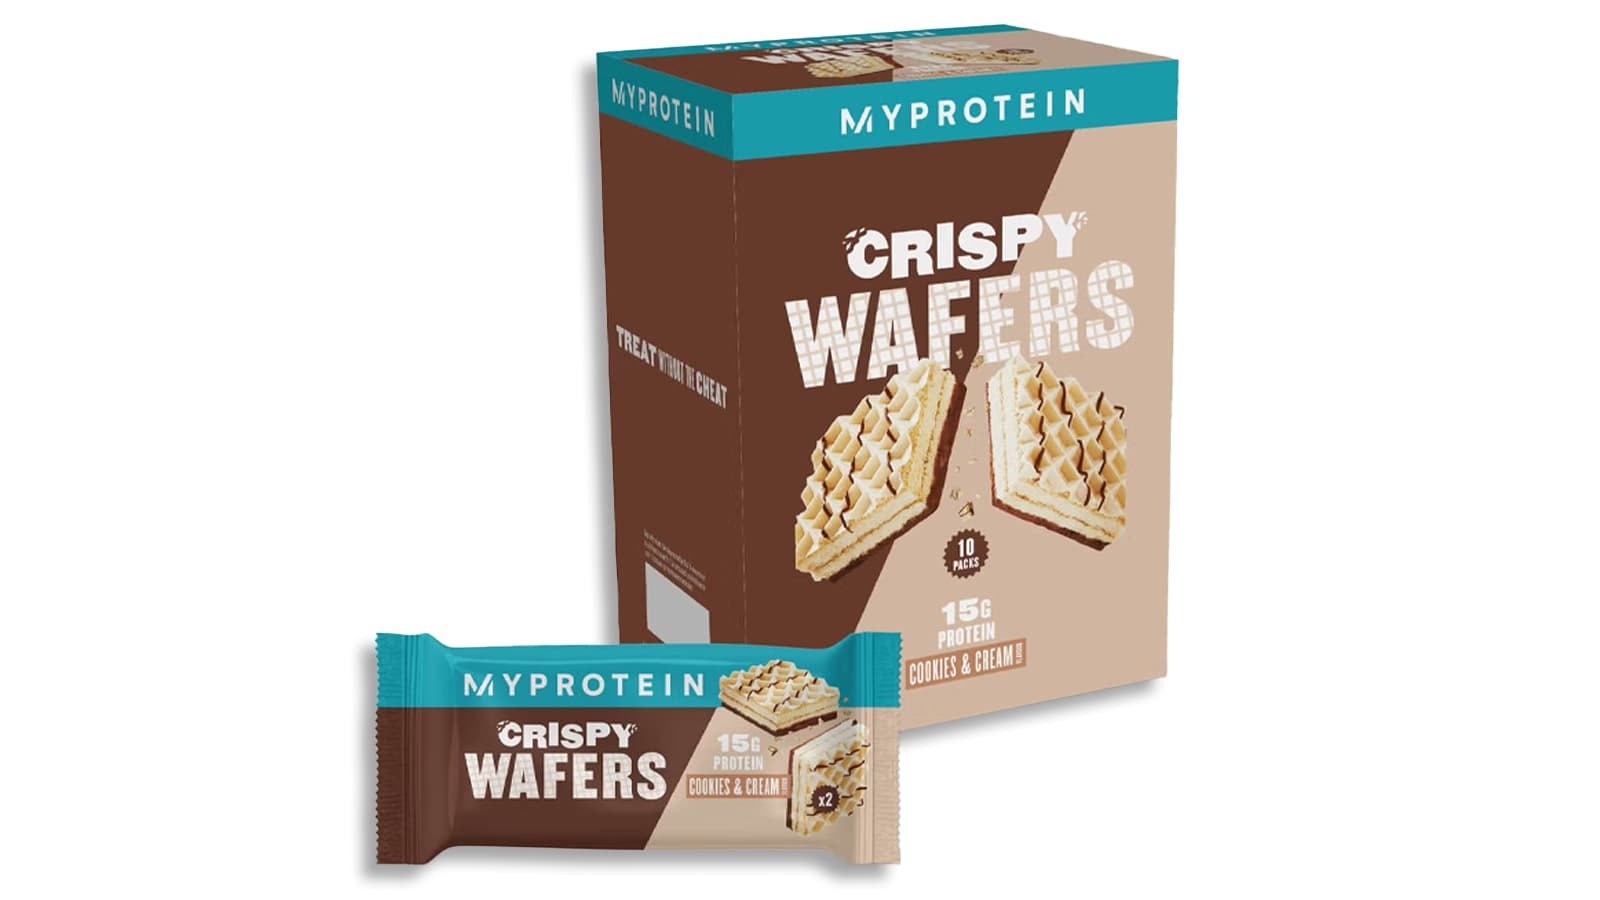 MyProtein Crispy Wafers Produkt Review. Vorschau der Verpackung einer Sorte der MyProtein Crispy Wafers.